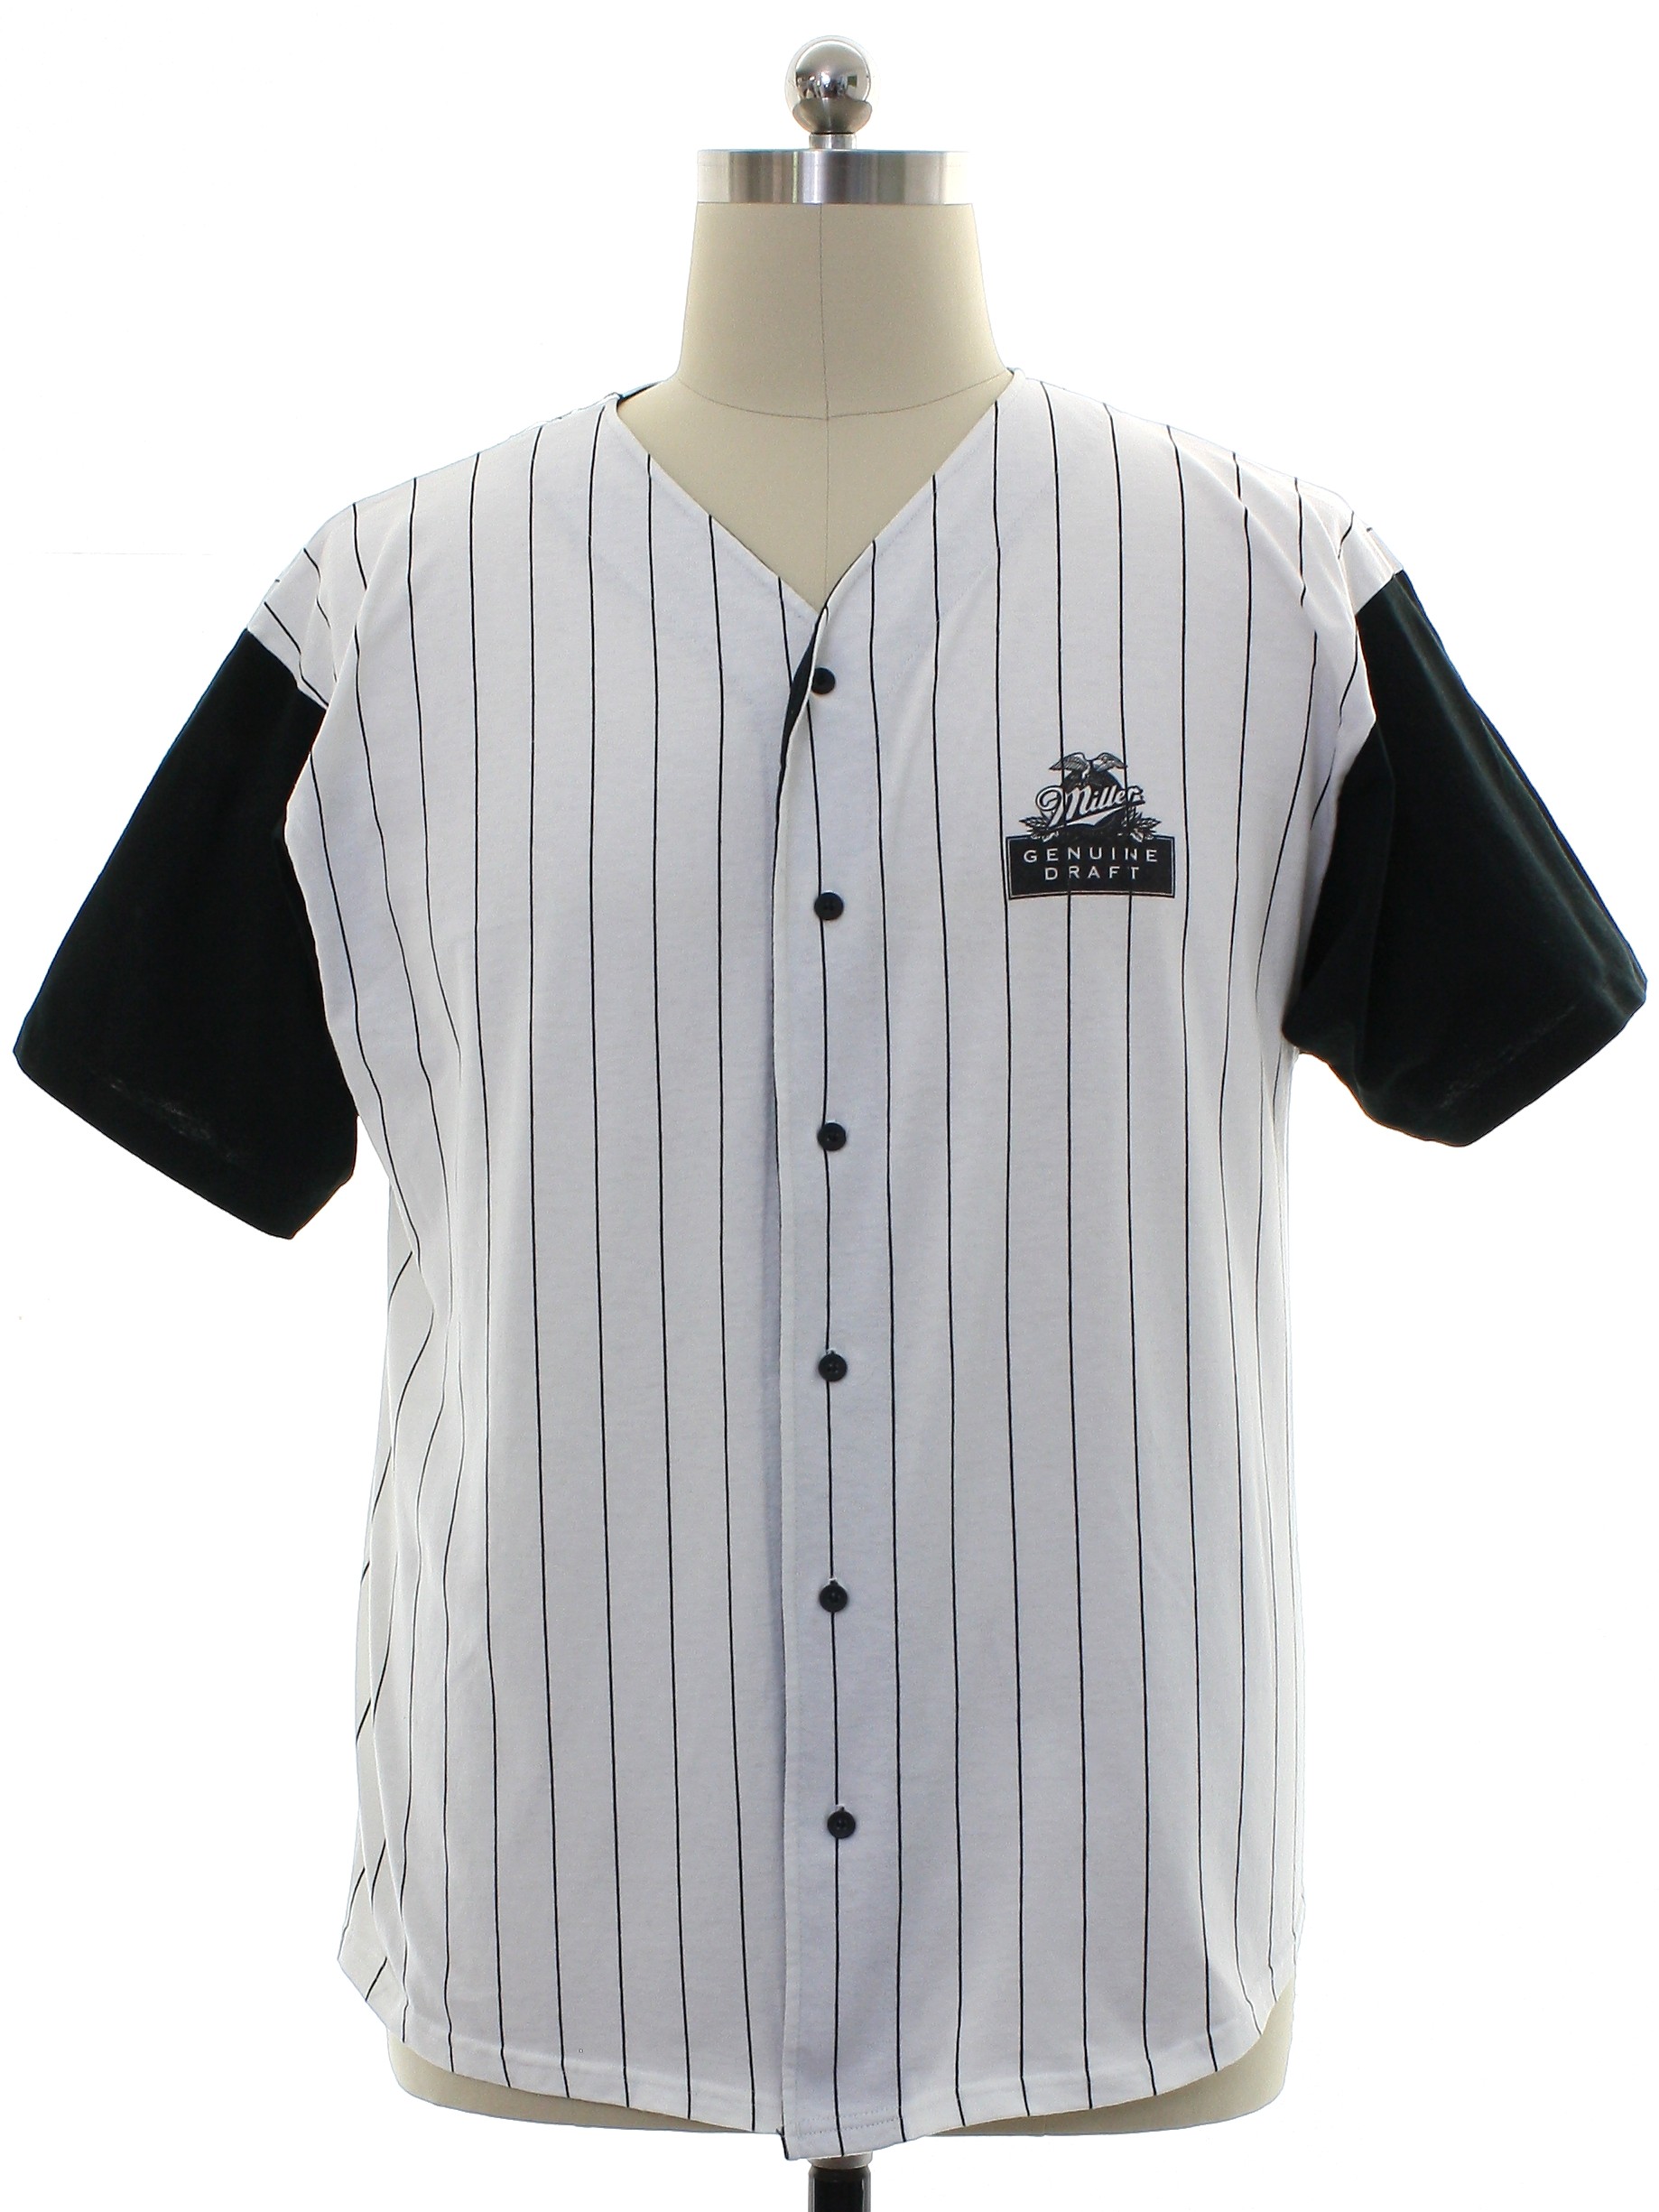 White Miller Lite Baseball Jersey Shirt